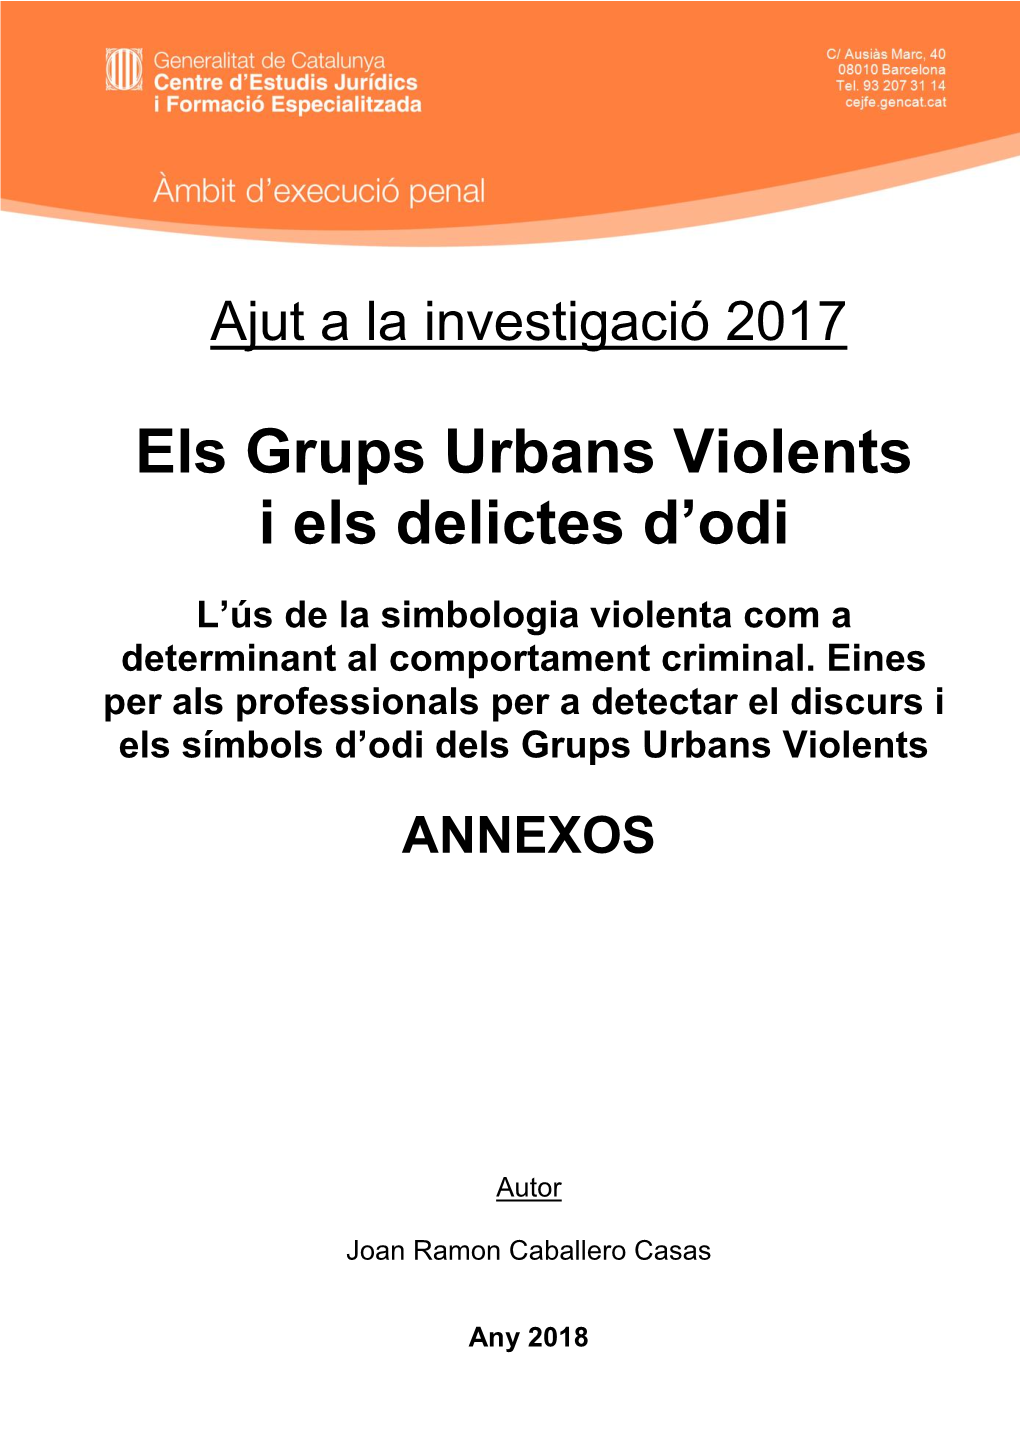 Els Grups Urbans Violents I Els Delictes D'odi. Annexos